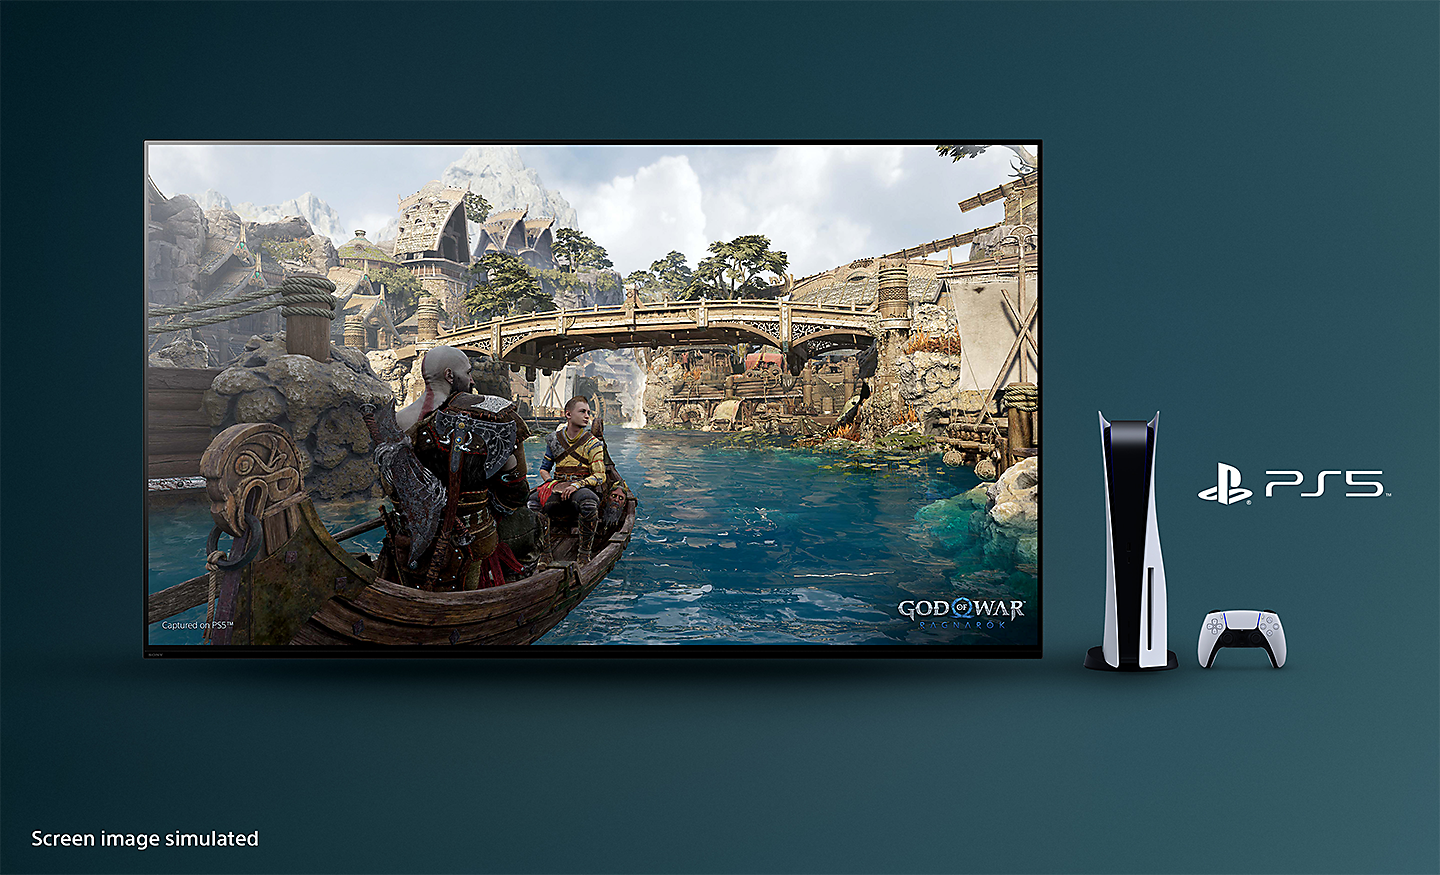 Телевизор BRAVIA со снимком экрана из игры «God of War: Рагнарёк», на котором изображена лодка на реке и мост на заднем плане с консолью PS5™, контроллером и логотипом PS5™ справа от телевизора